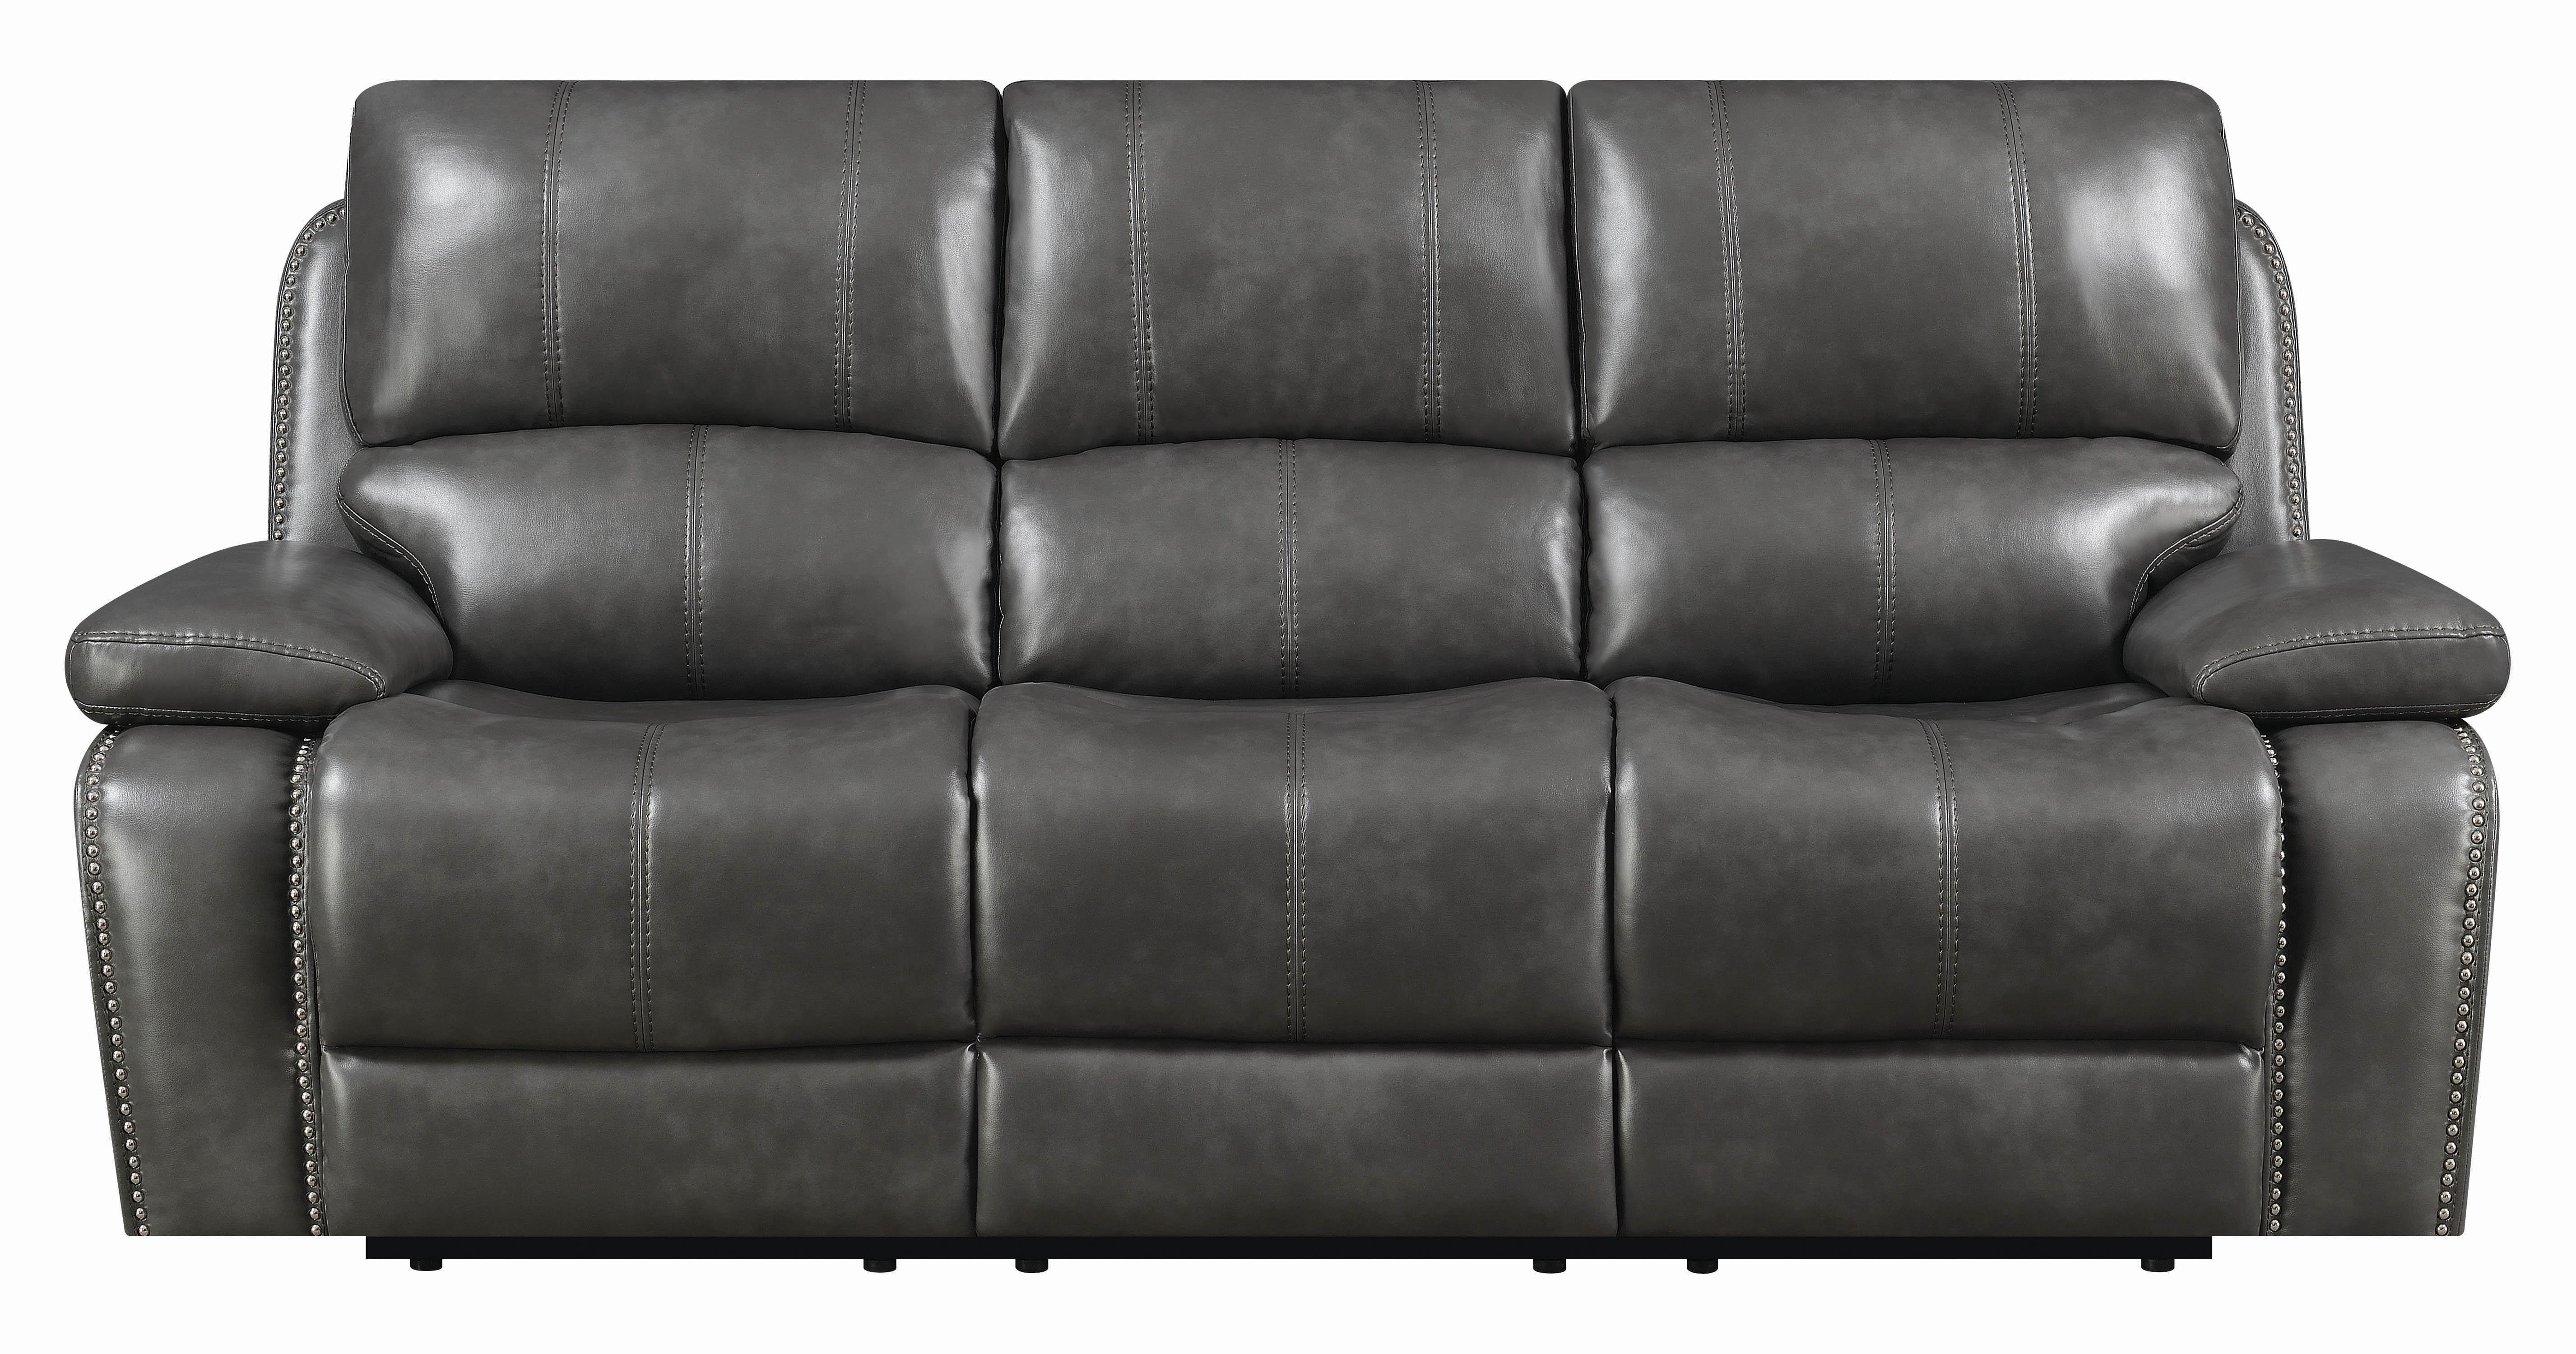 

    
Coaster Ravenna Power sofa Gray 603211P
